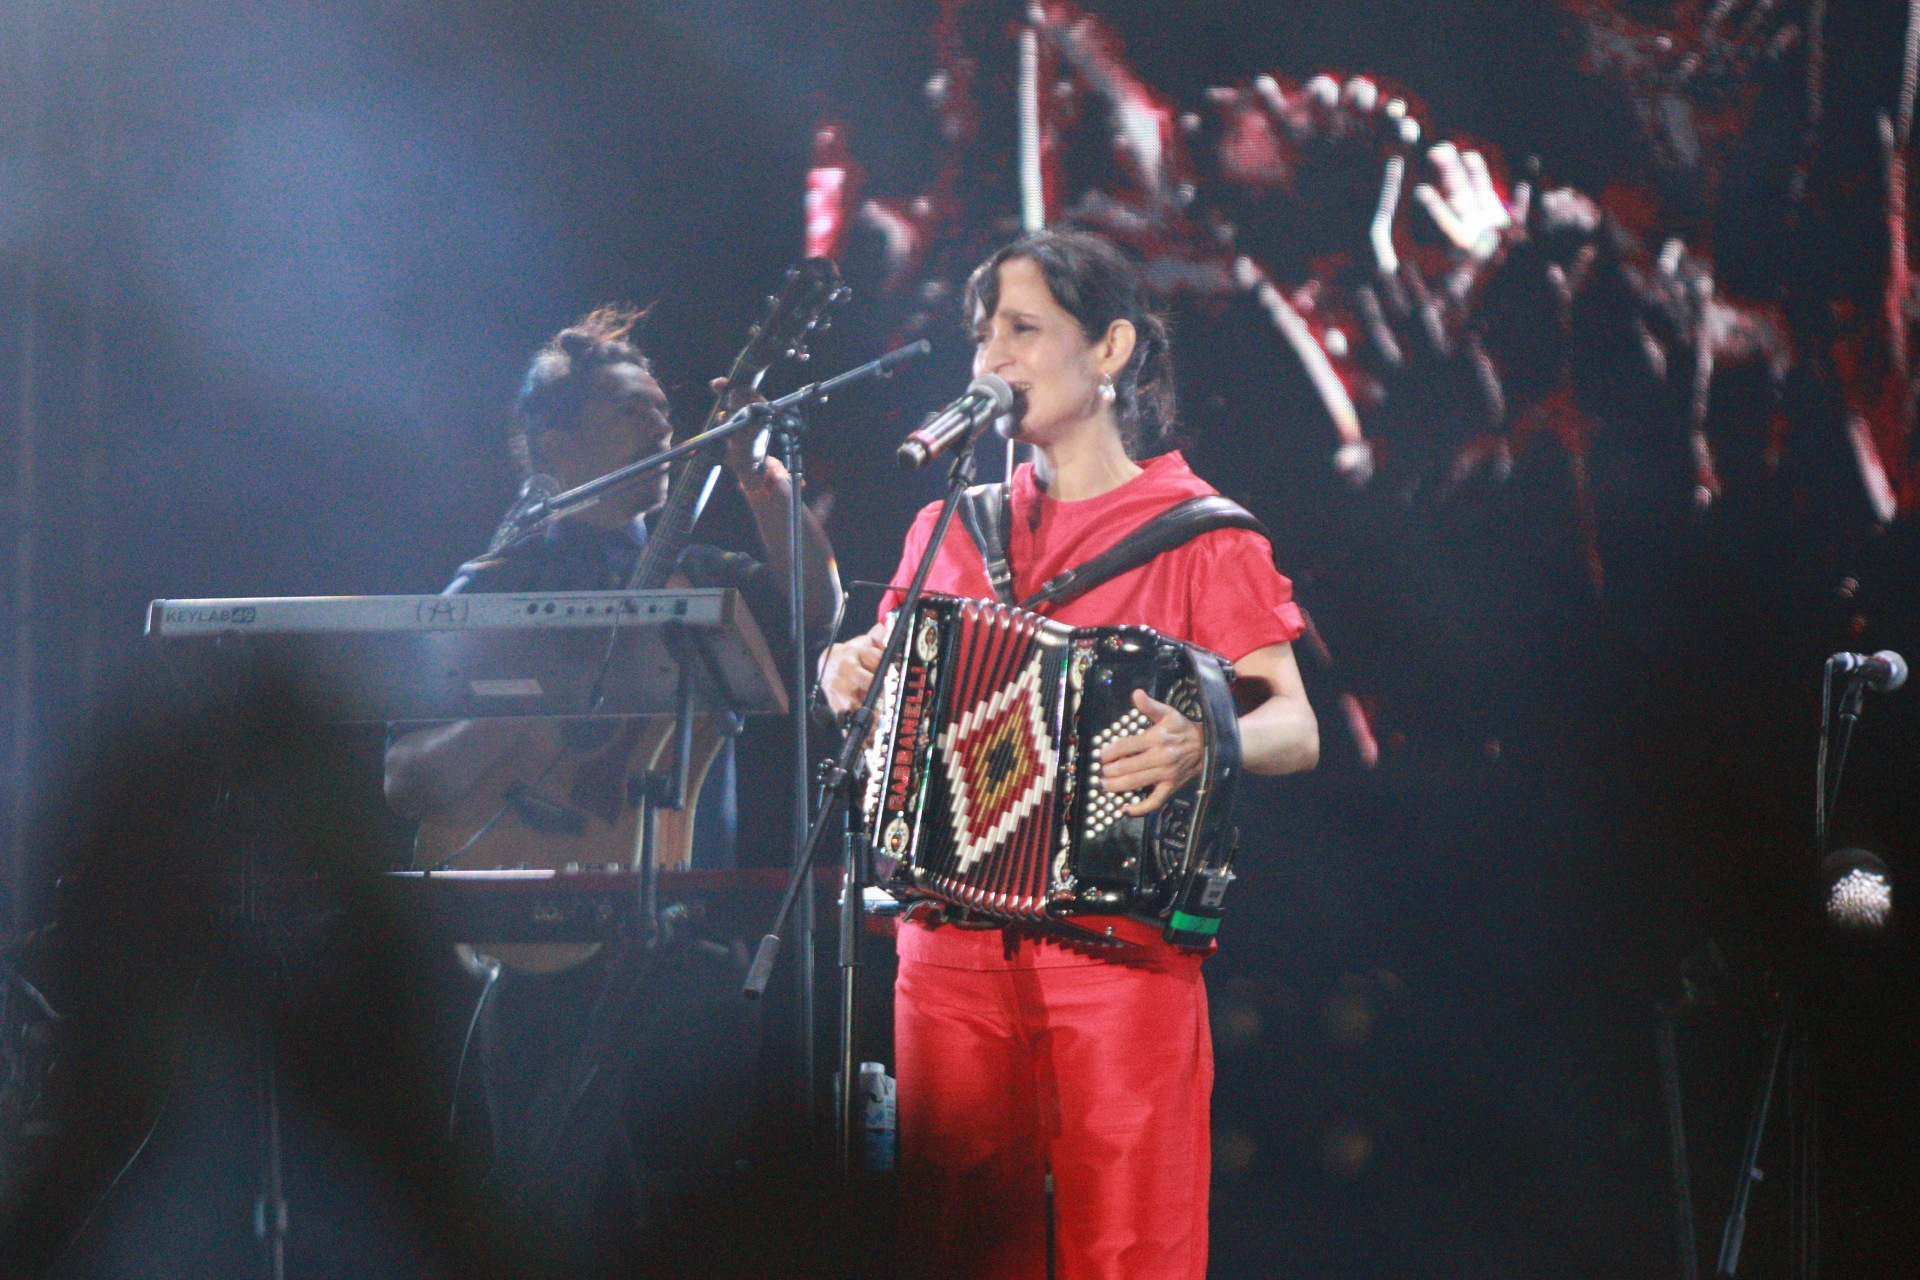 El concierto de Julieta Venegas en el Vive Latino estuvo íntegramente dedicado a la mujer y su revolución (Foto: Gustavo Azem/ Infobae)